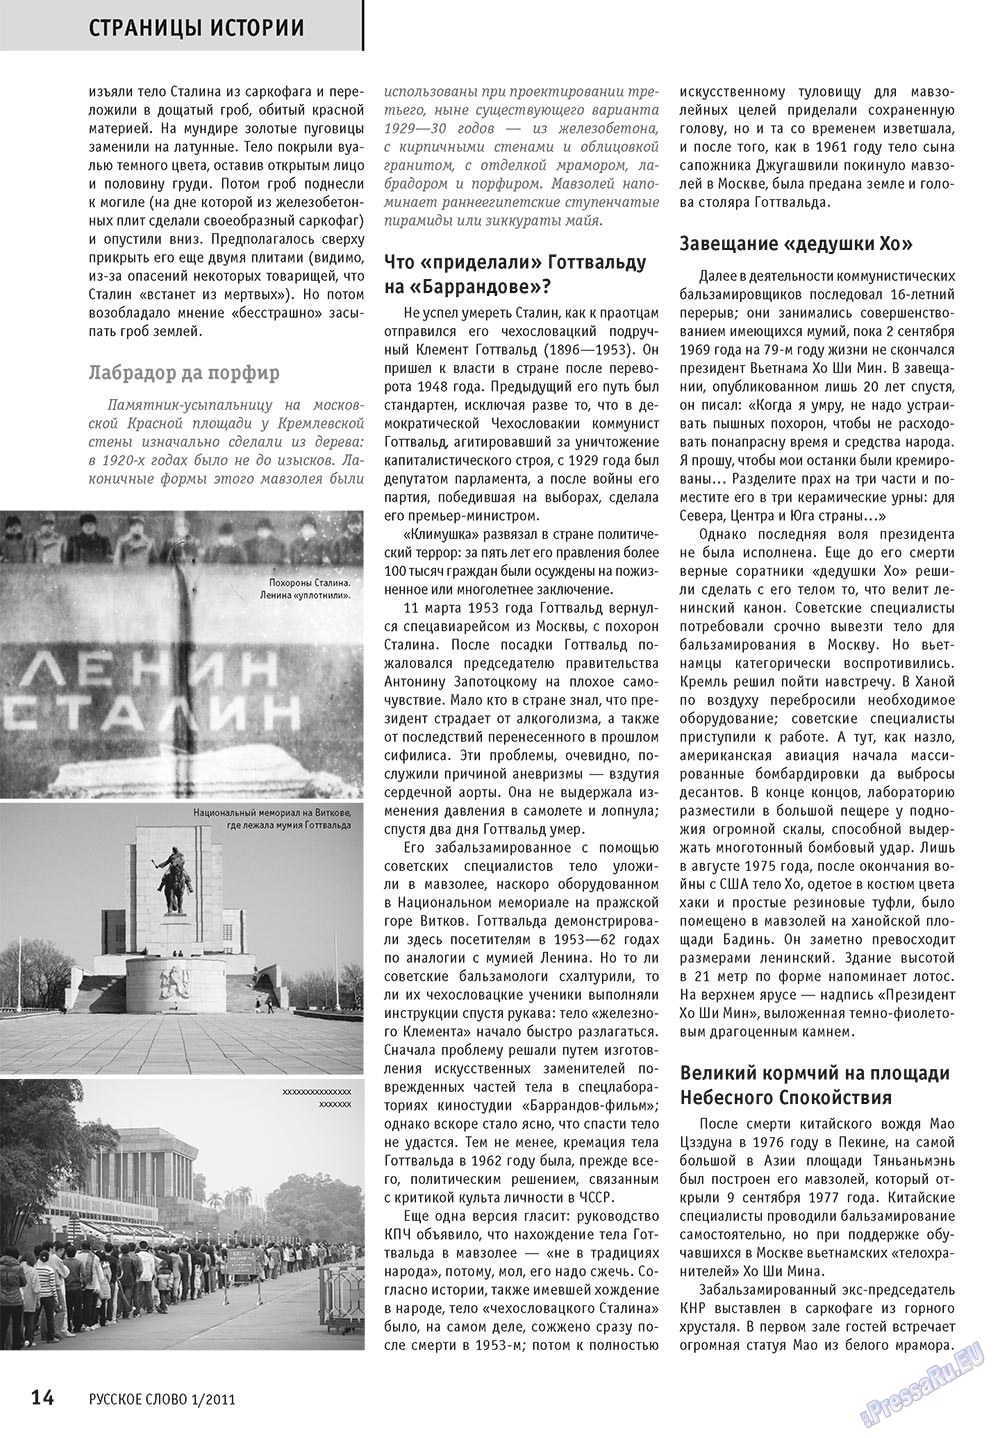 Русское слово (журнал). 2011 год, номер 1, стр. 16